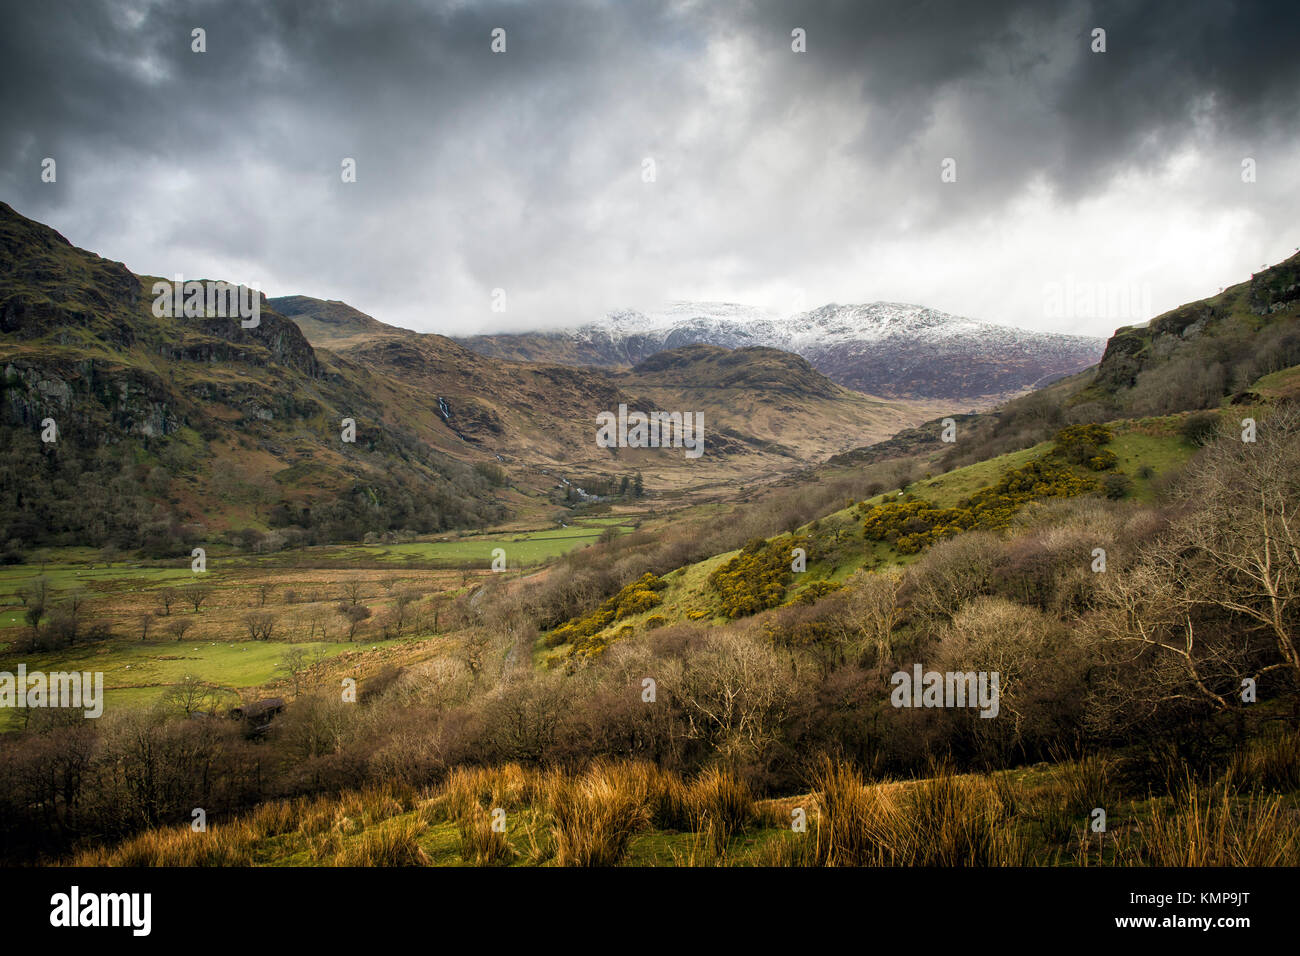 El Parque Nacional de Snowdonia, invernal vistas hacia el monte Snowdon, y las sierras cercanas. Foto de stock